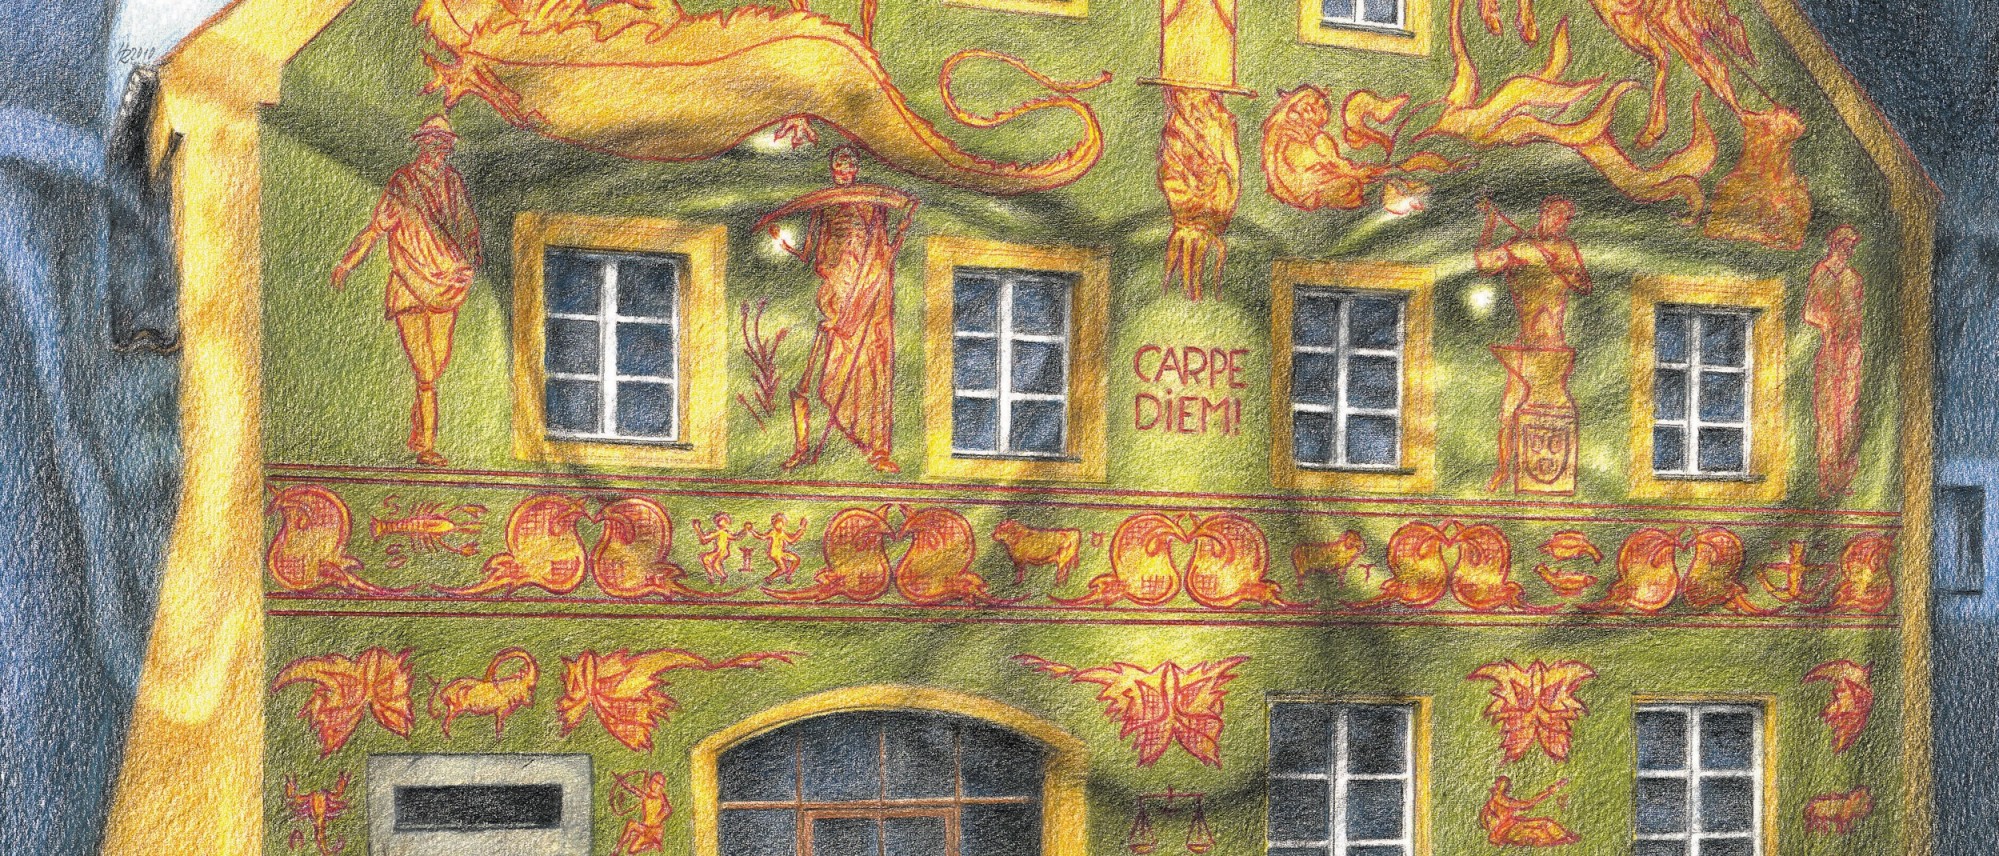 Die Zeichnung ist Teil einer Slideshow. Sie zeigt die Fassade des Schmidt-Hauses mit den Kratzputz-Malereien von Karl Schmidt. Hinterlegt ist ein Porträtfoto des Künstlers mit Brille.